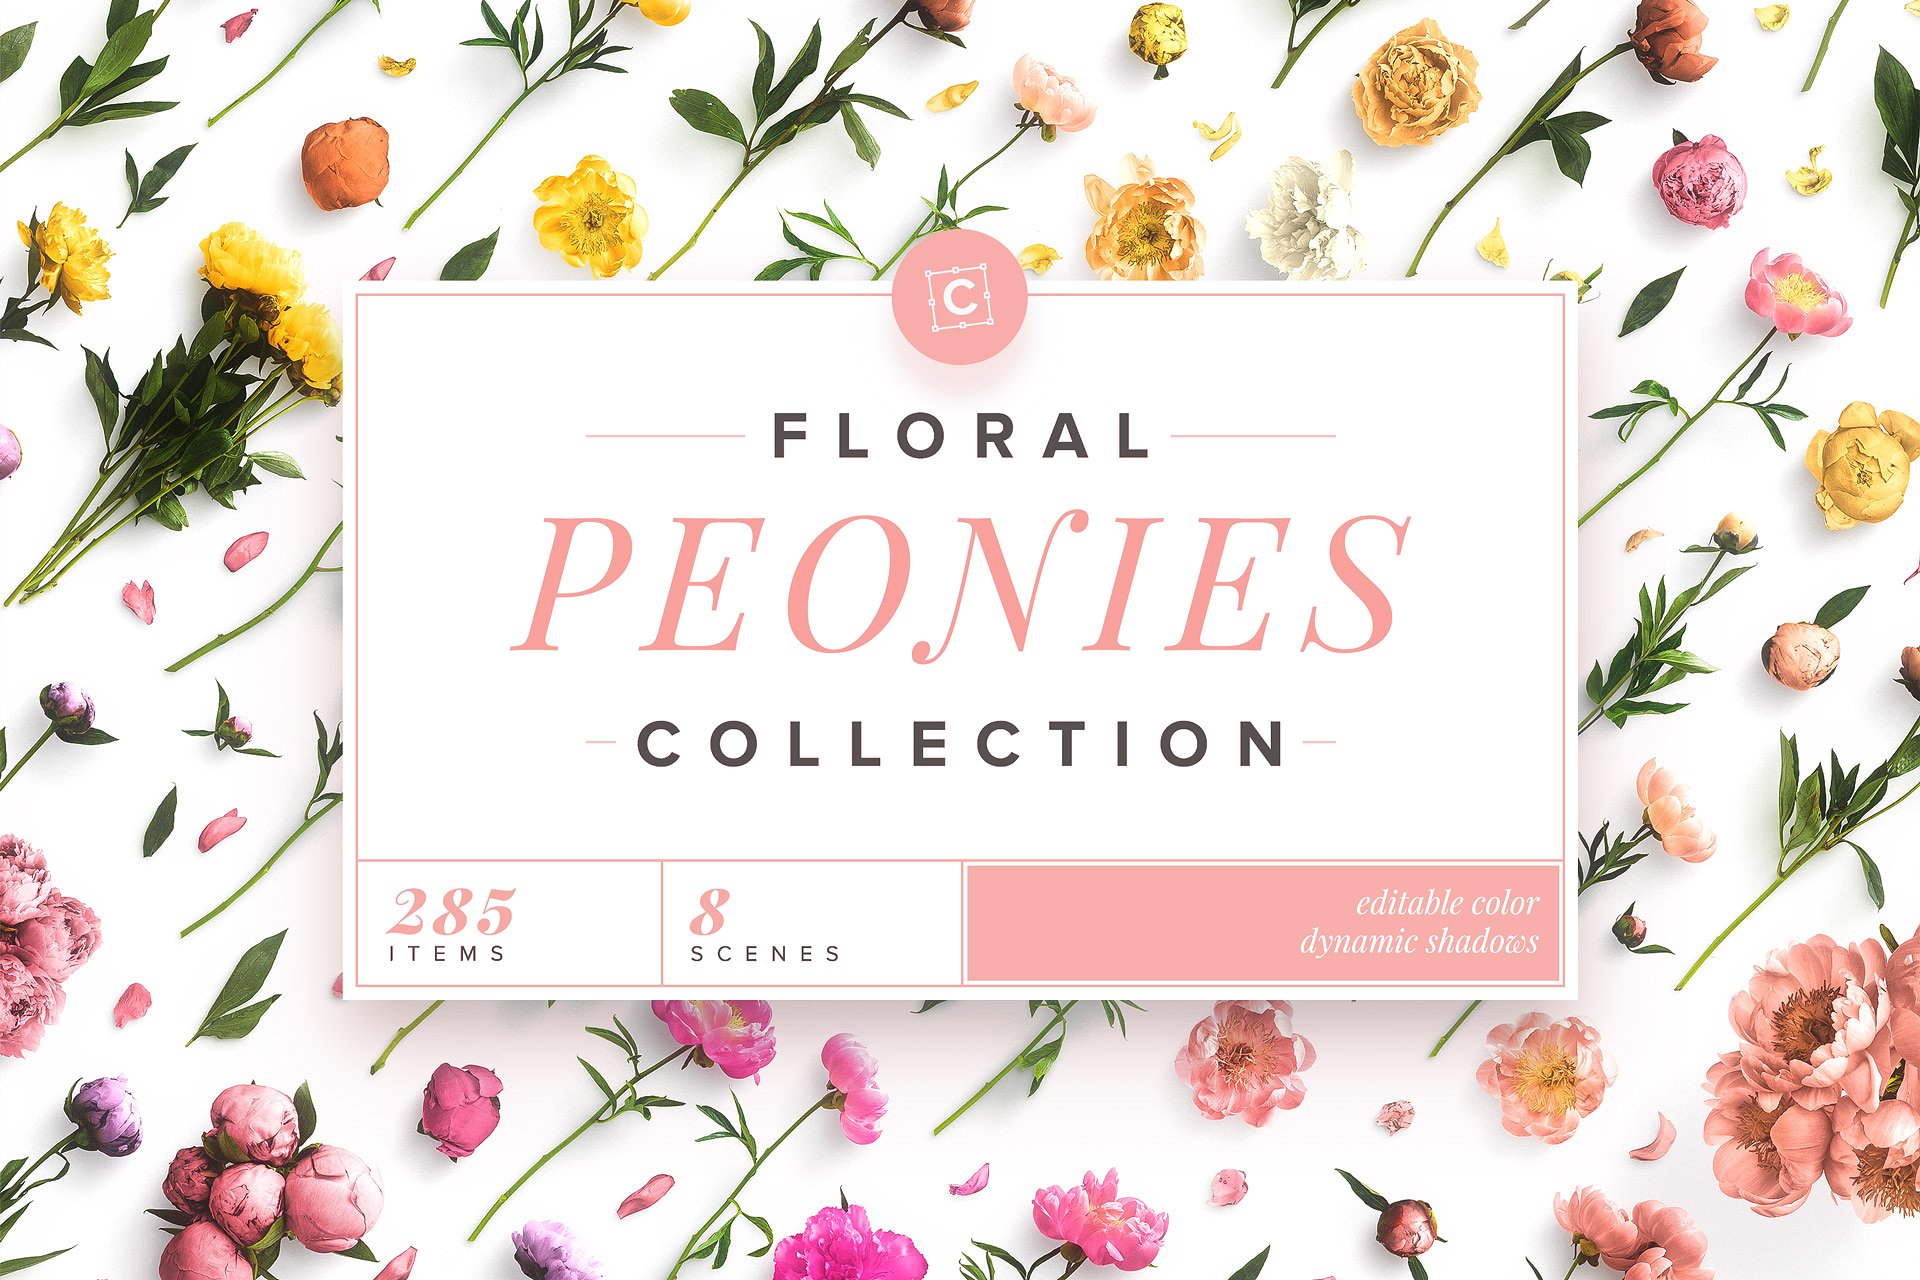 牡丹花卉系列高清图片集合 Floral Peonies Collection插图